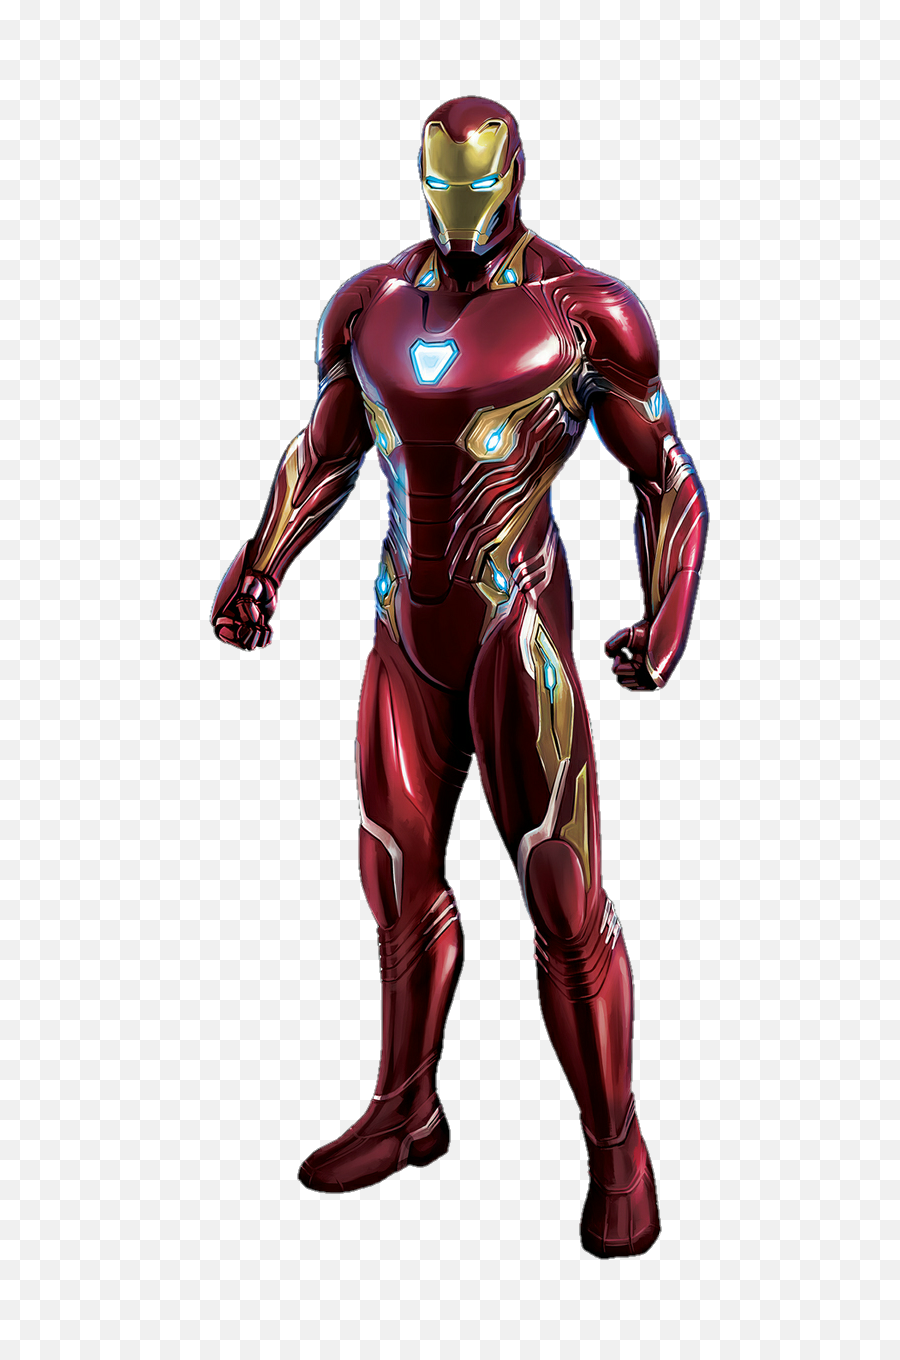 Disney Infinity Iron Man Transparent - Iron Man Mark 50 Png,Iron Man Transparent